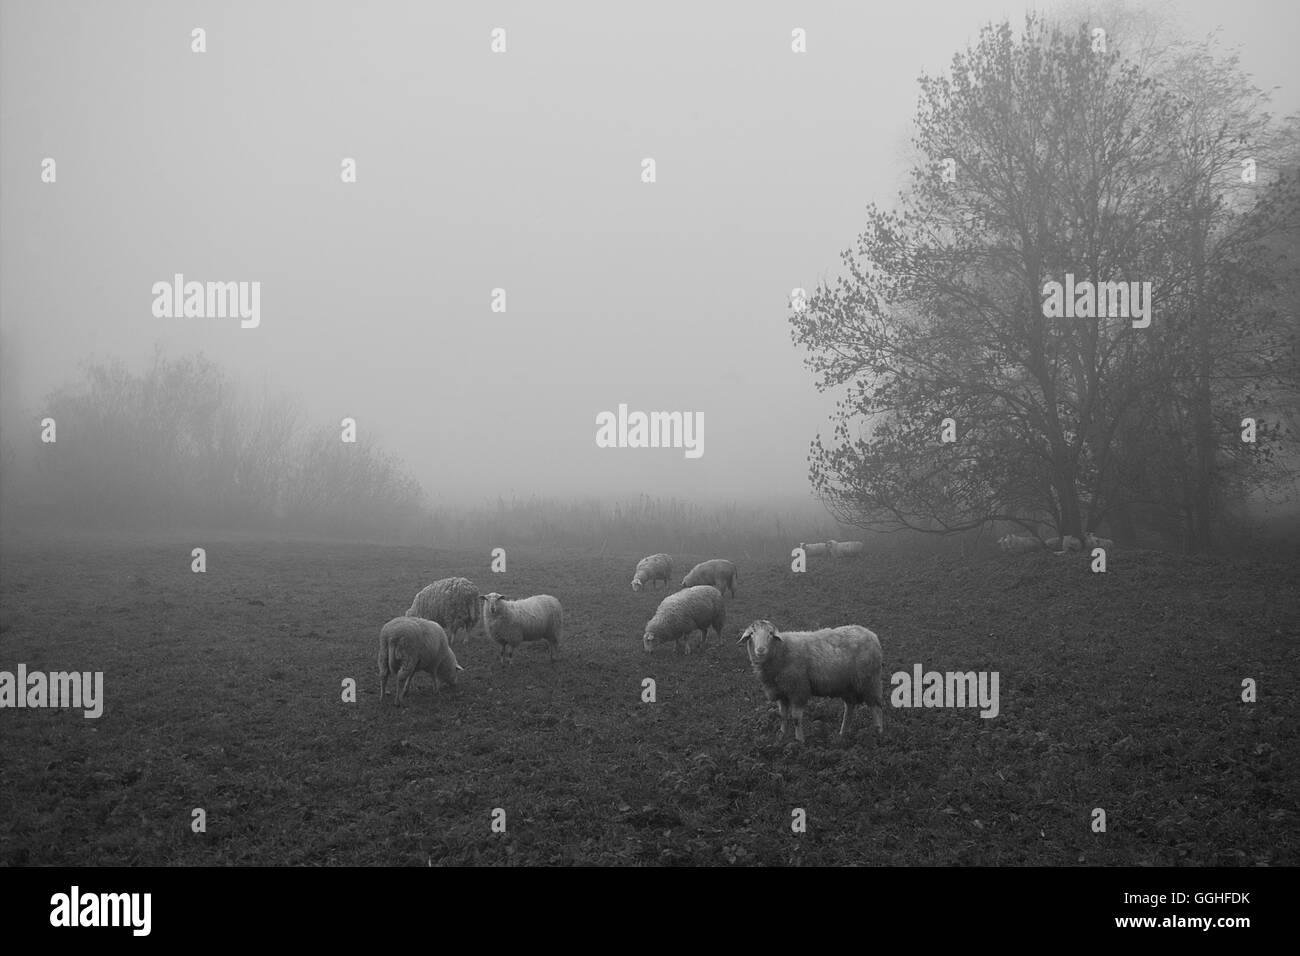 Paisaje de niebla con ovejas, fotografía en blanco y negro, Paisaje mit Schafen Nebel, früher Morgen, schwarz-weiß foto Foto de stock